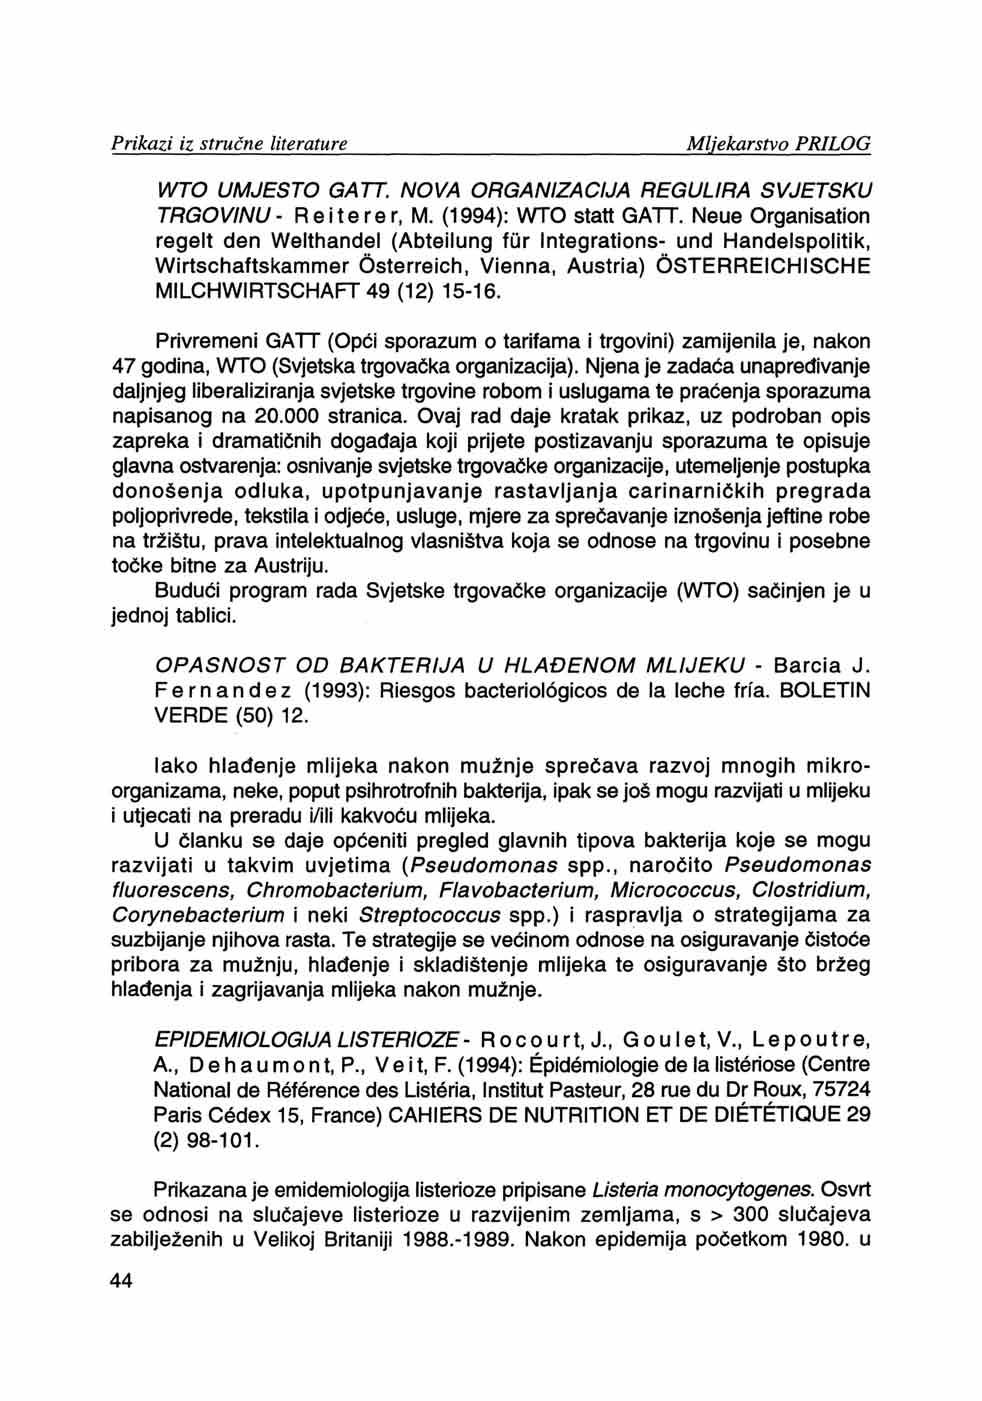 WTO UMJESTO GATT. NOVA ORGANIZACIJA REGULIRA SVJETSKU TRGOVINU- Reiterer, M. (1994): WTO statt GATT.